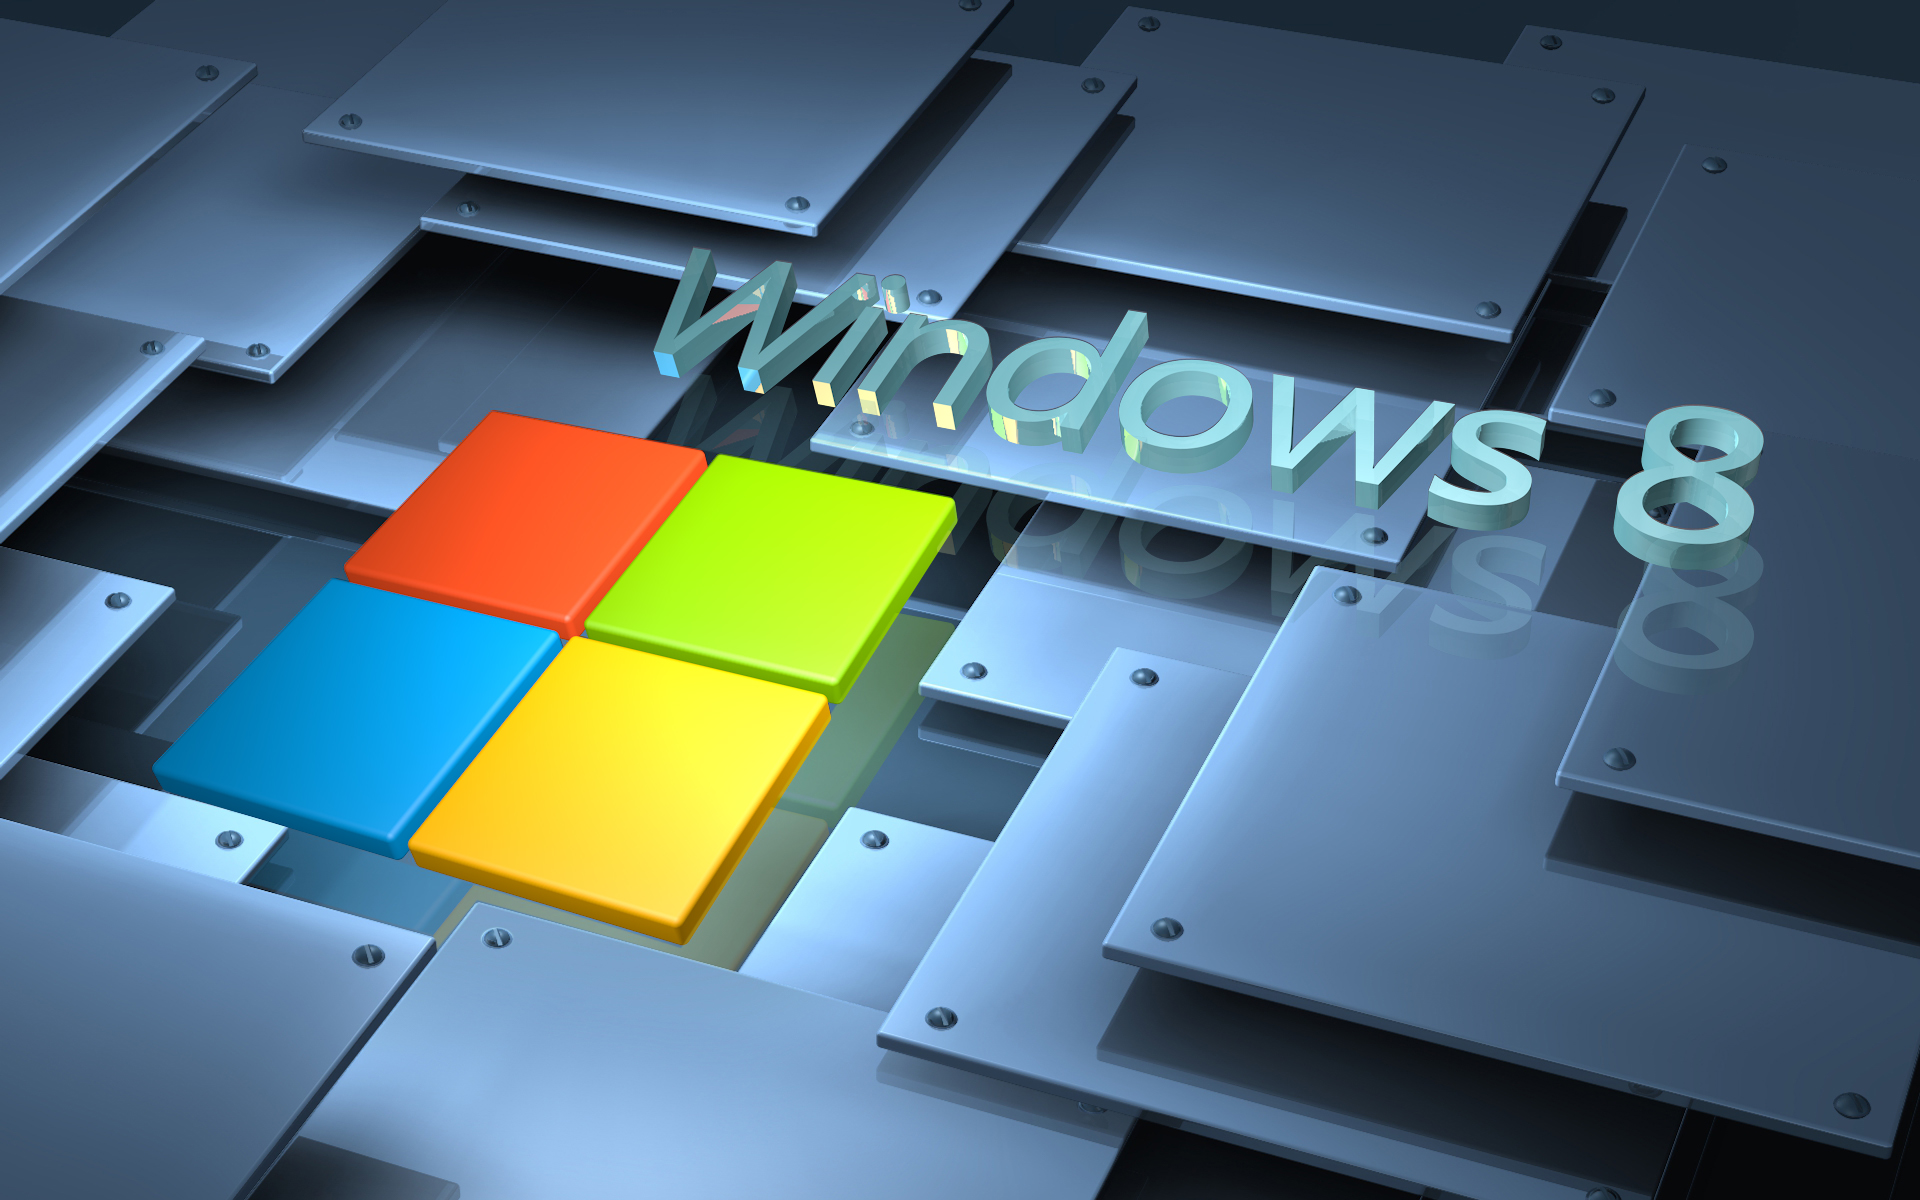 Windows 8 Wallpaper Widescreen 6758 Wallpaper Wallpaper hd 1920x1200